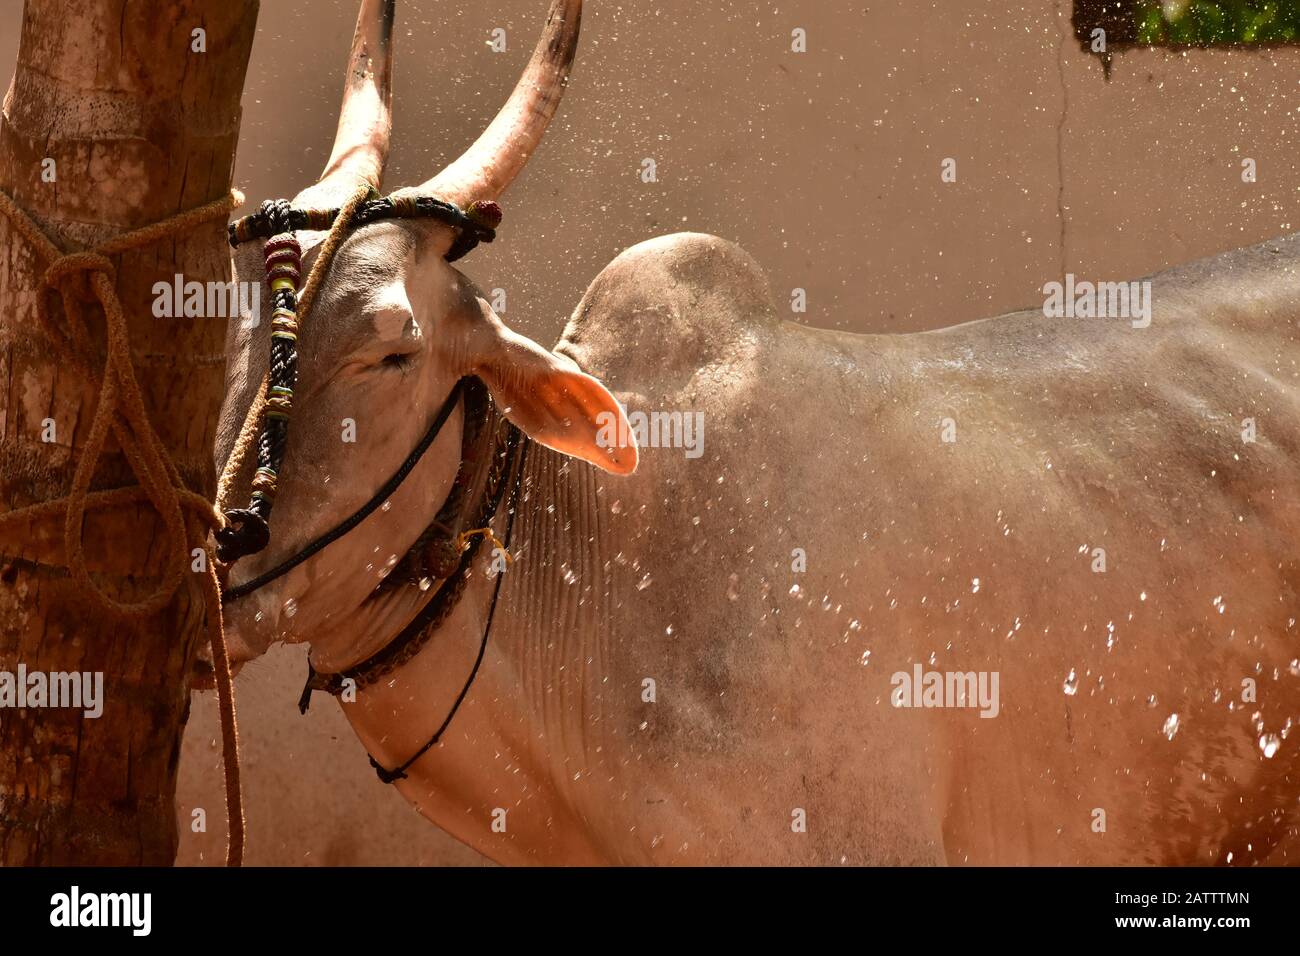 un taureau réagit aux éclaboussures d'eau Banque D'Images